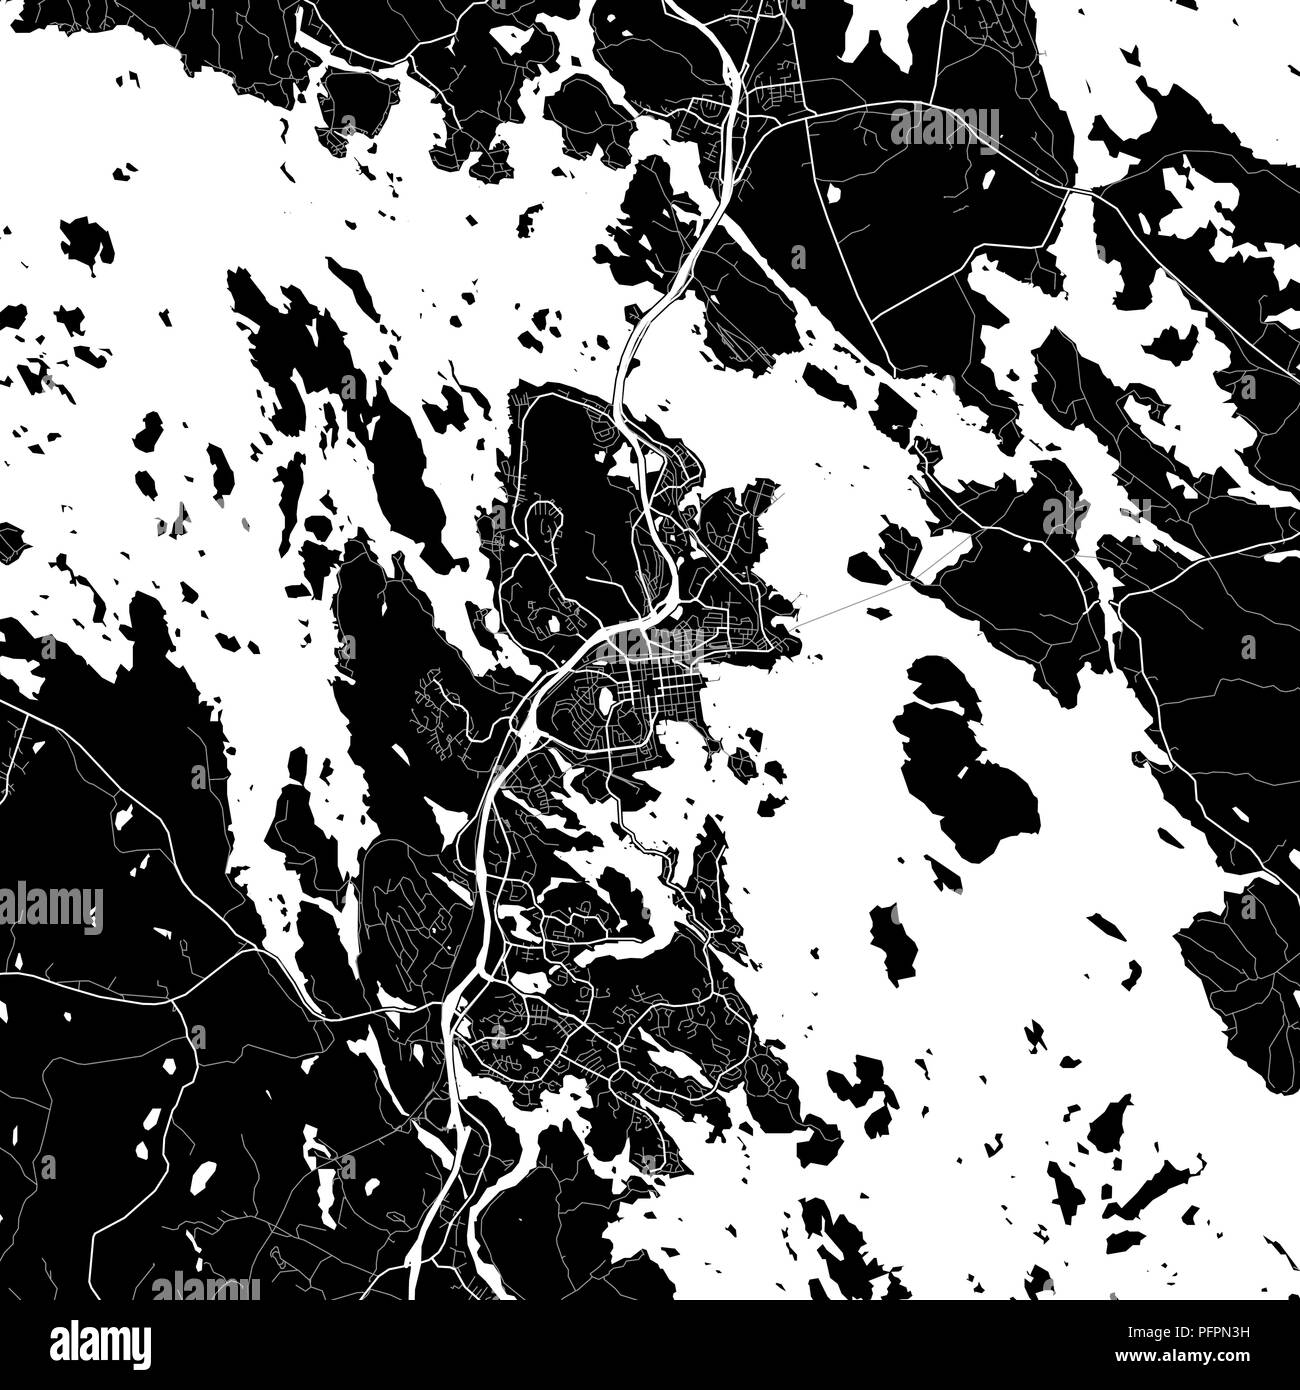 Lageplan von Kuopio, Finnland. Der dunkle Hintergrund Version für Infografik und Marketing Projekte. Diese Karte von Kuopio, enthält typische Sehenswürdigkeiten mit Stree Stock Vektor